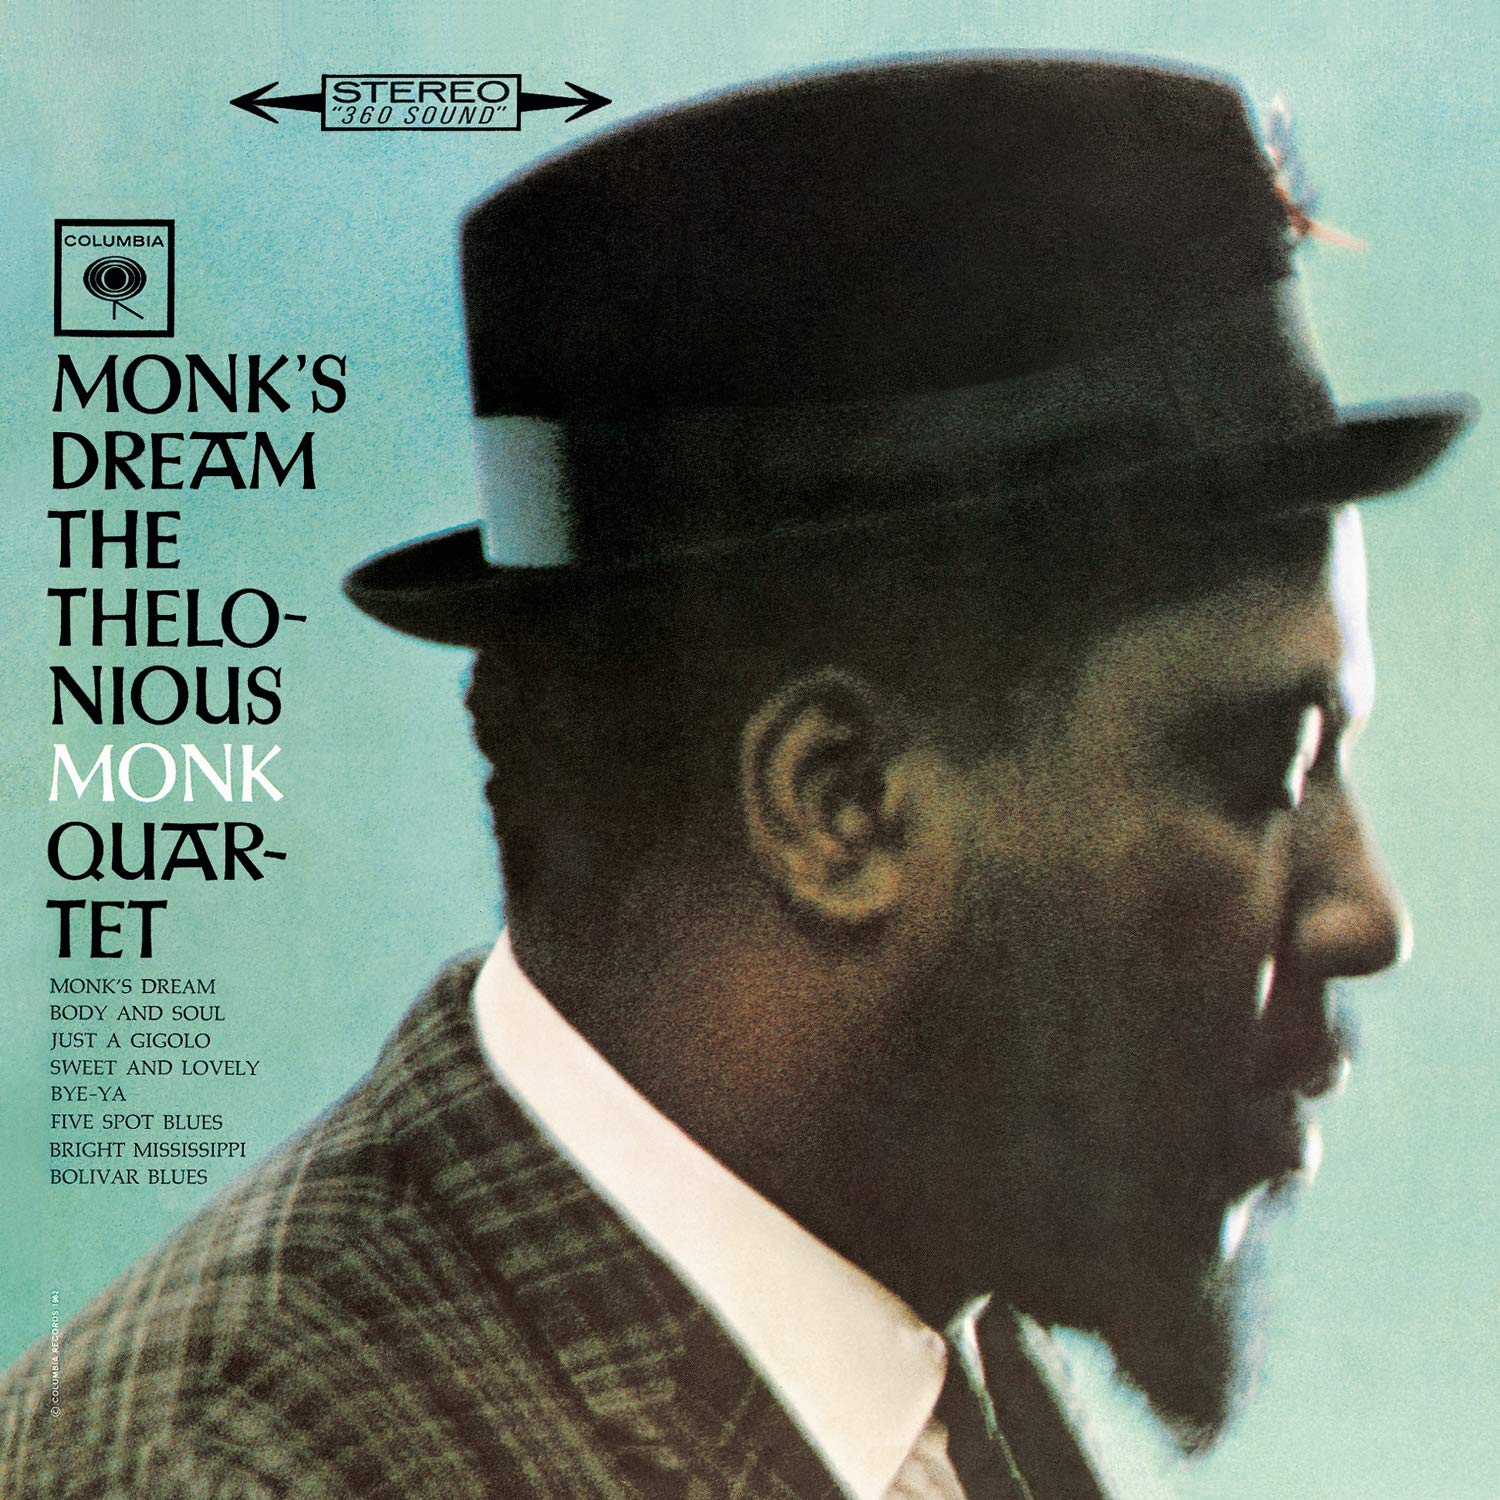 The Thelonious Monk Quartet "Monk's Dream" Blue LP